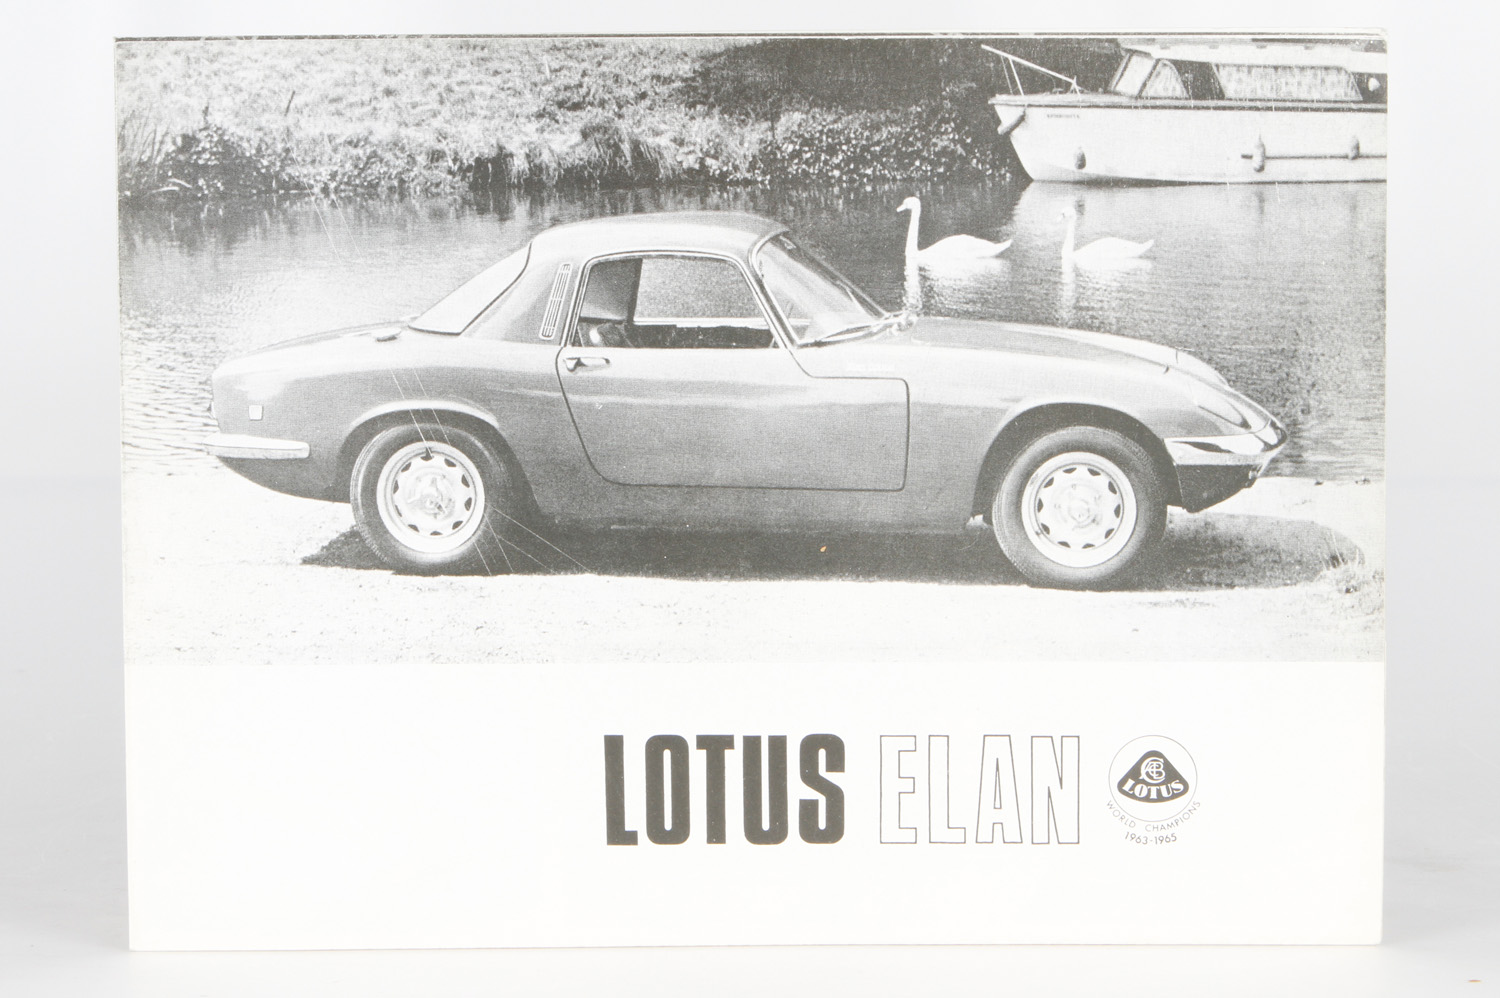 Lotus Elan Faltprospekt 1965 @ s/w, engl., minimale Gebrauchsspuren